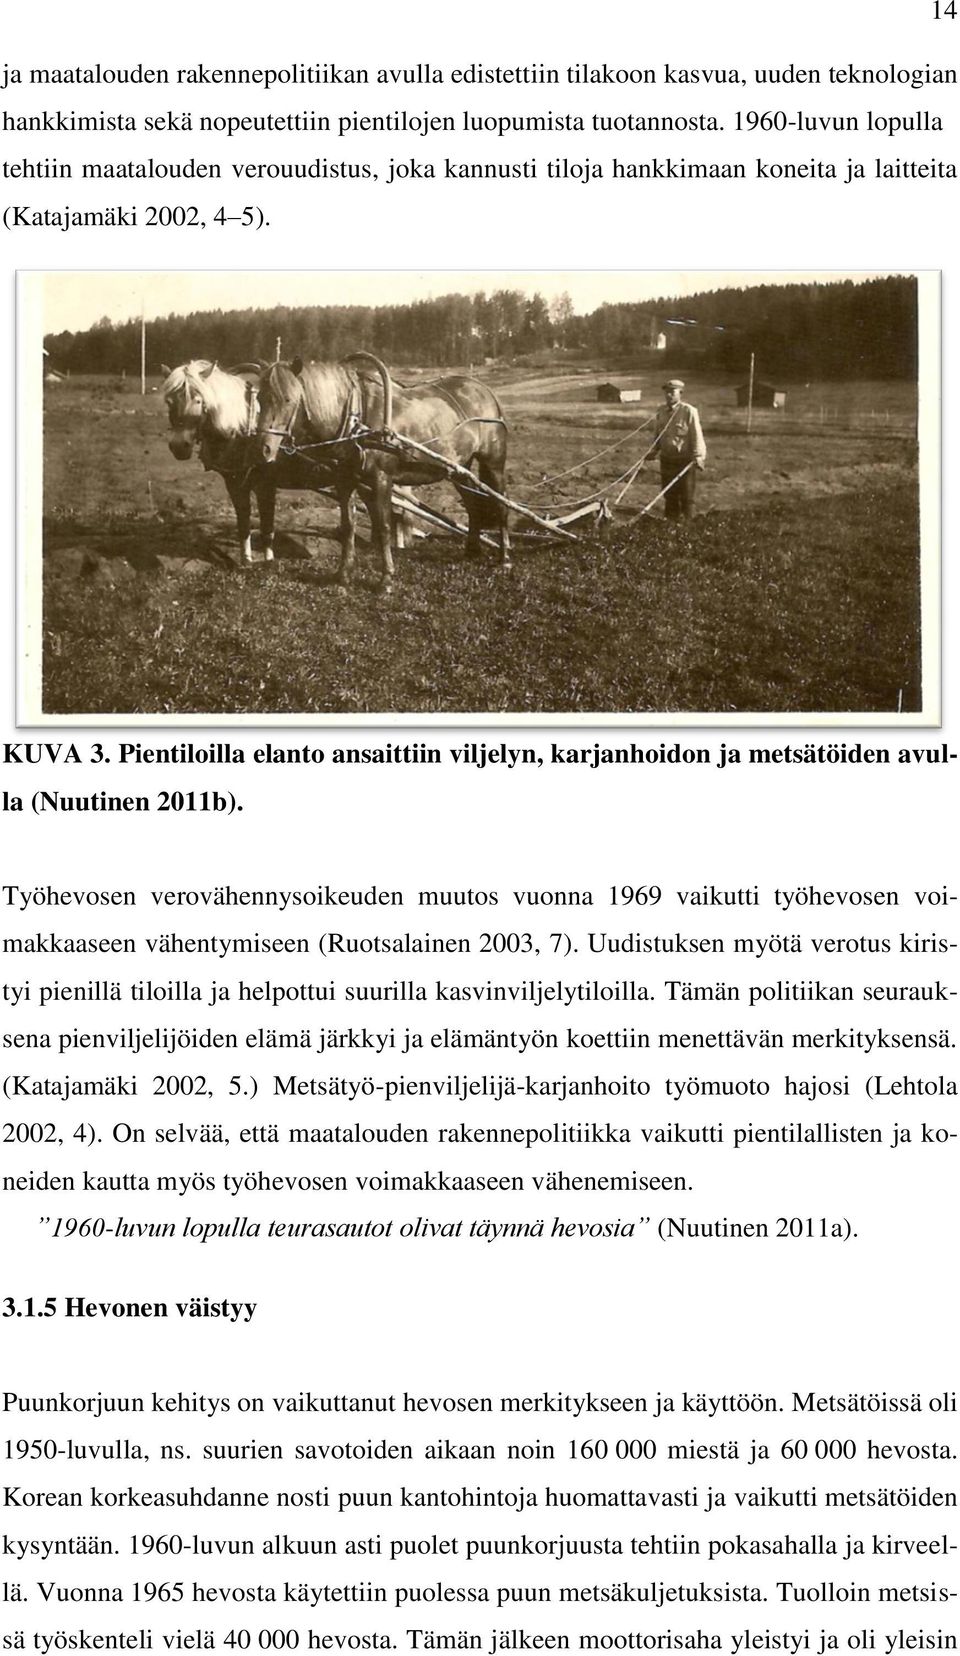 Pientiloilla elanto ansaittiin viljelyn, karjanhoidon ja metsätöiden avulla (Nuutinen 2011b).